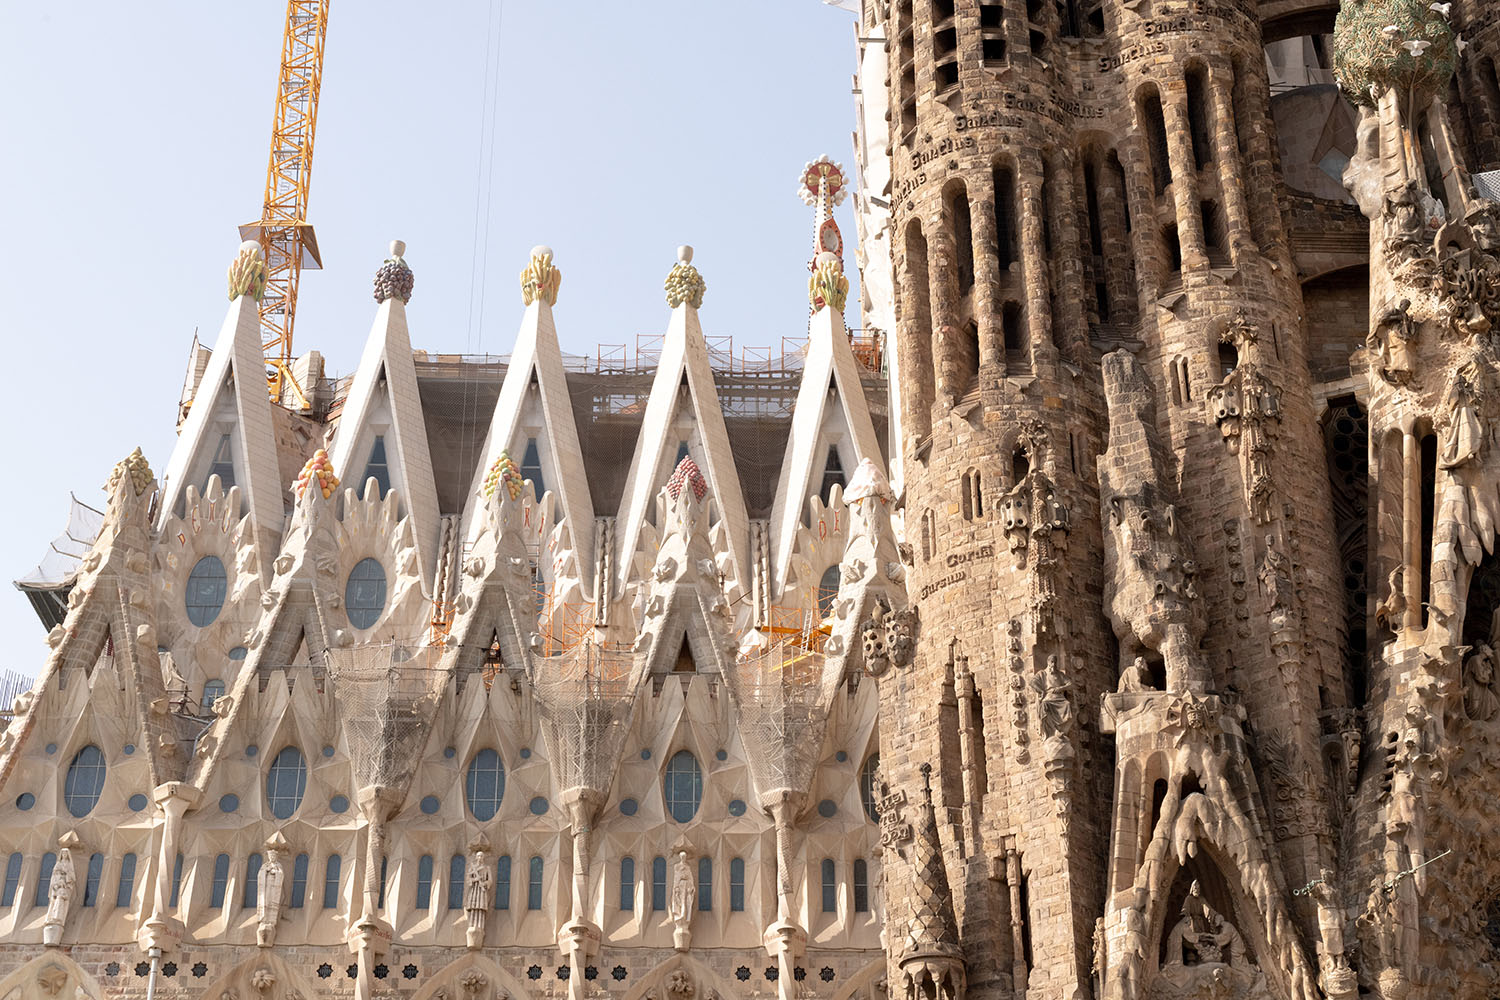 Coco & Voltaire - La Sagrada Familia cathedral in Barcelona, Spain